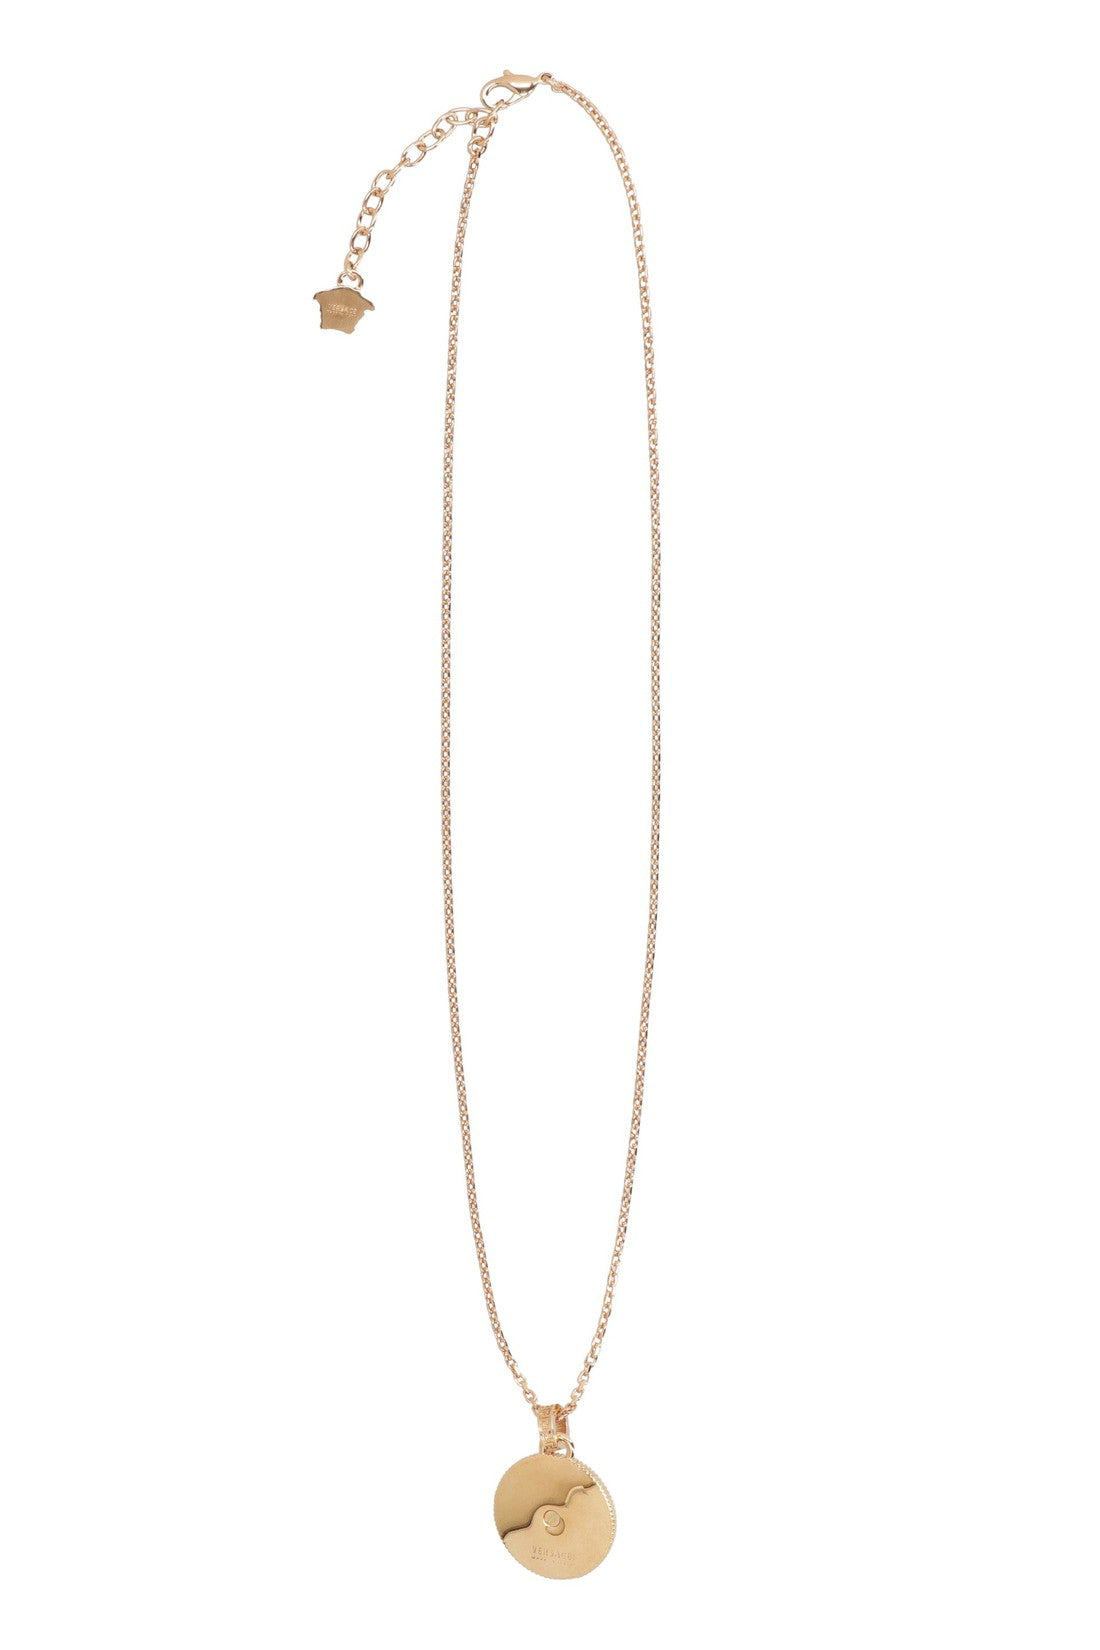 Versace-OUTLET-SALE-Gold-tone metal necklace-ARCHIVIST